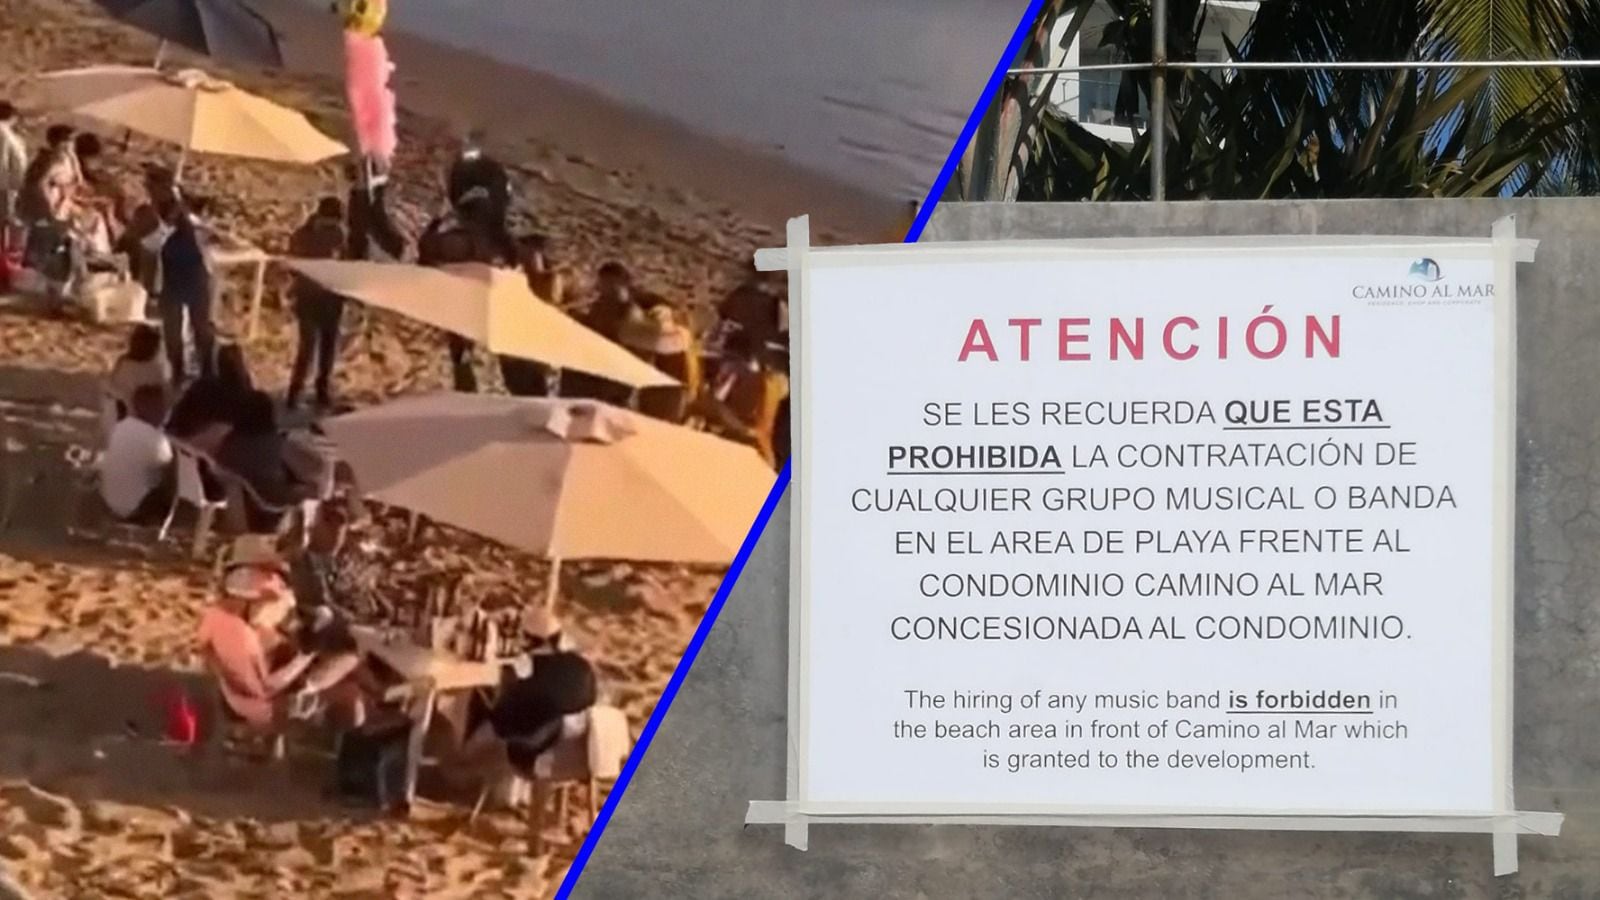 Hoteleros intentaron prohibir la música banda en las playas públicas. (Foto: @TerrorRestMX/@YosoyJames)